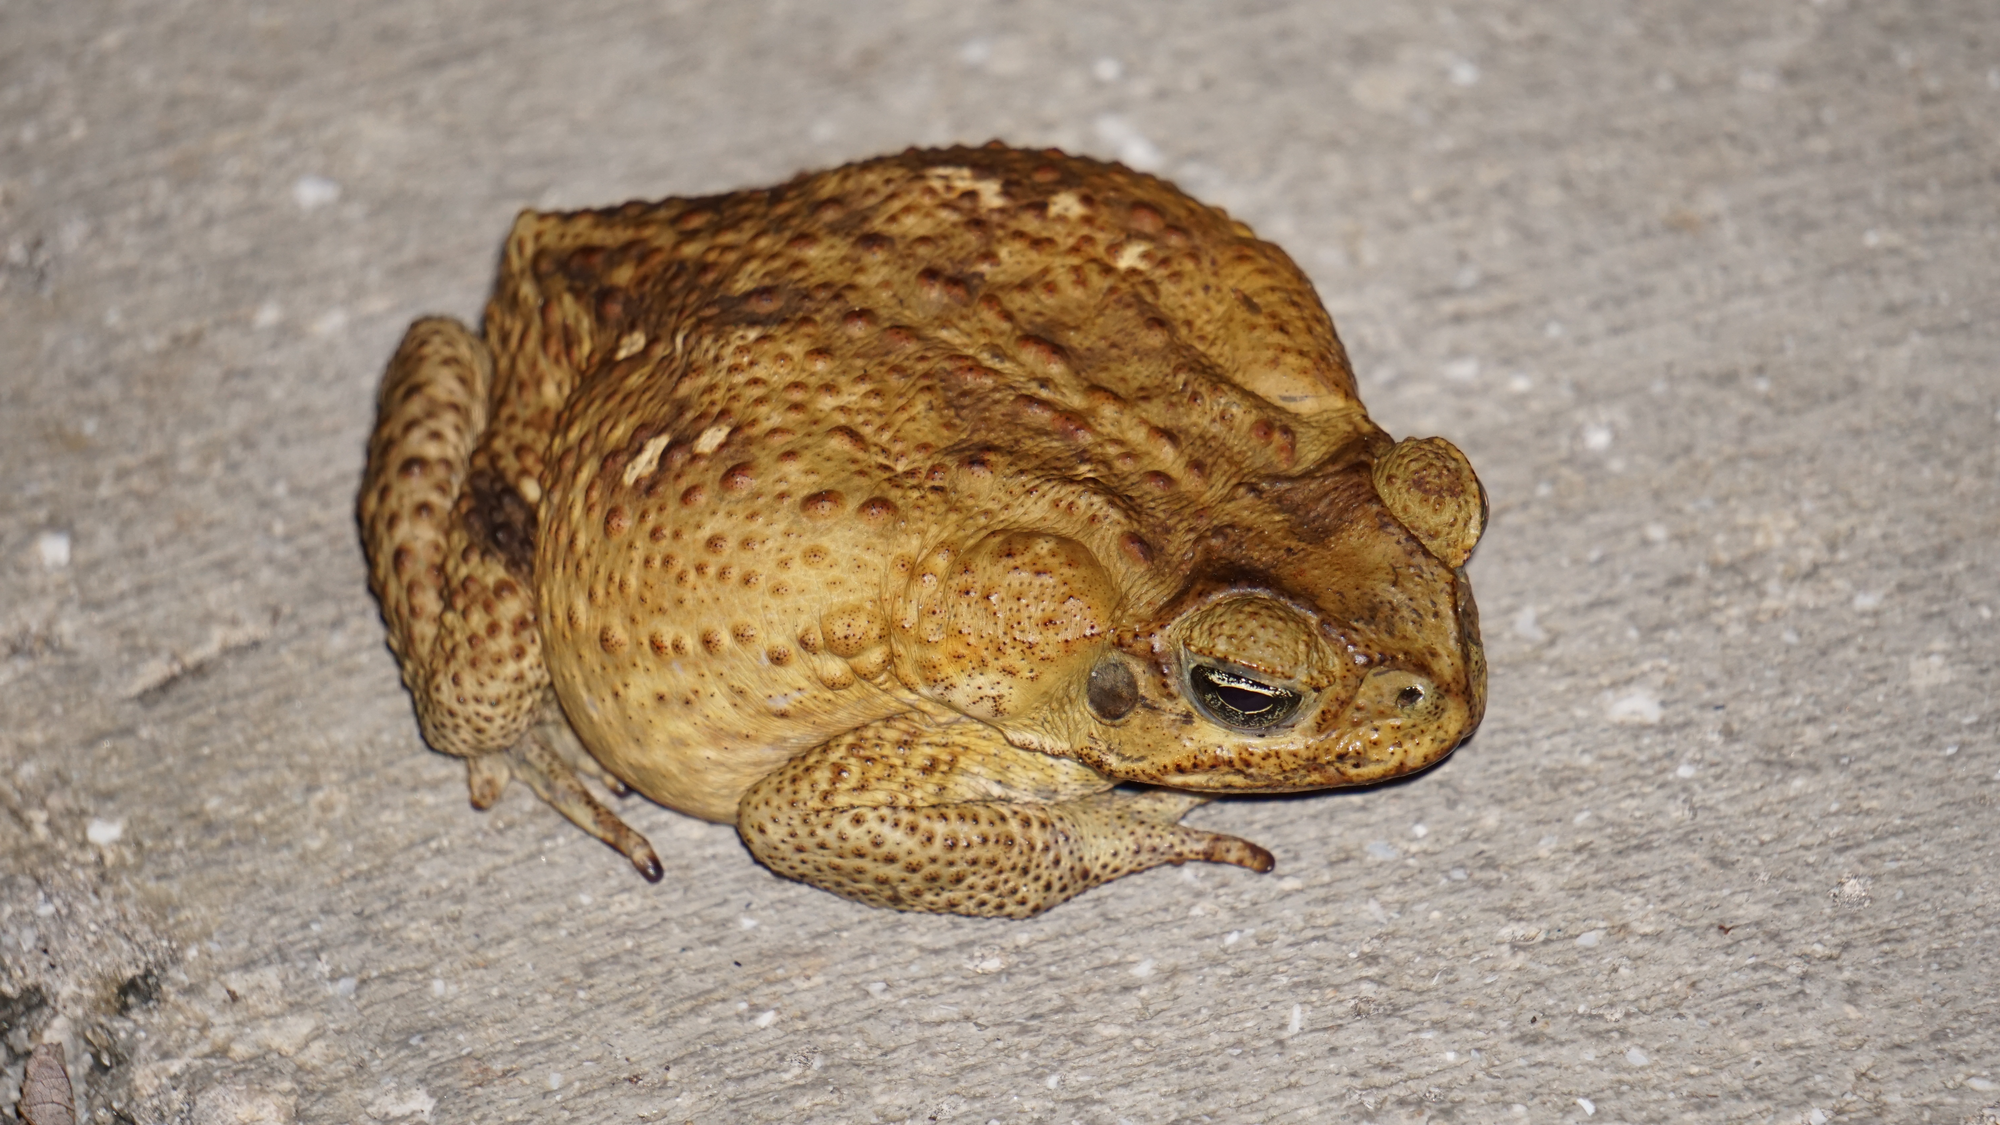 A Florida Toad